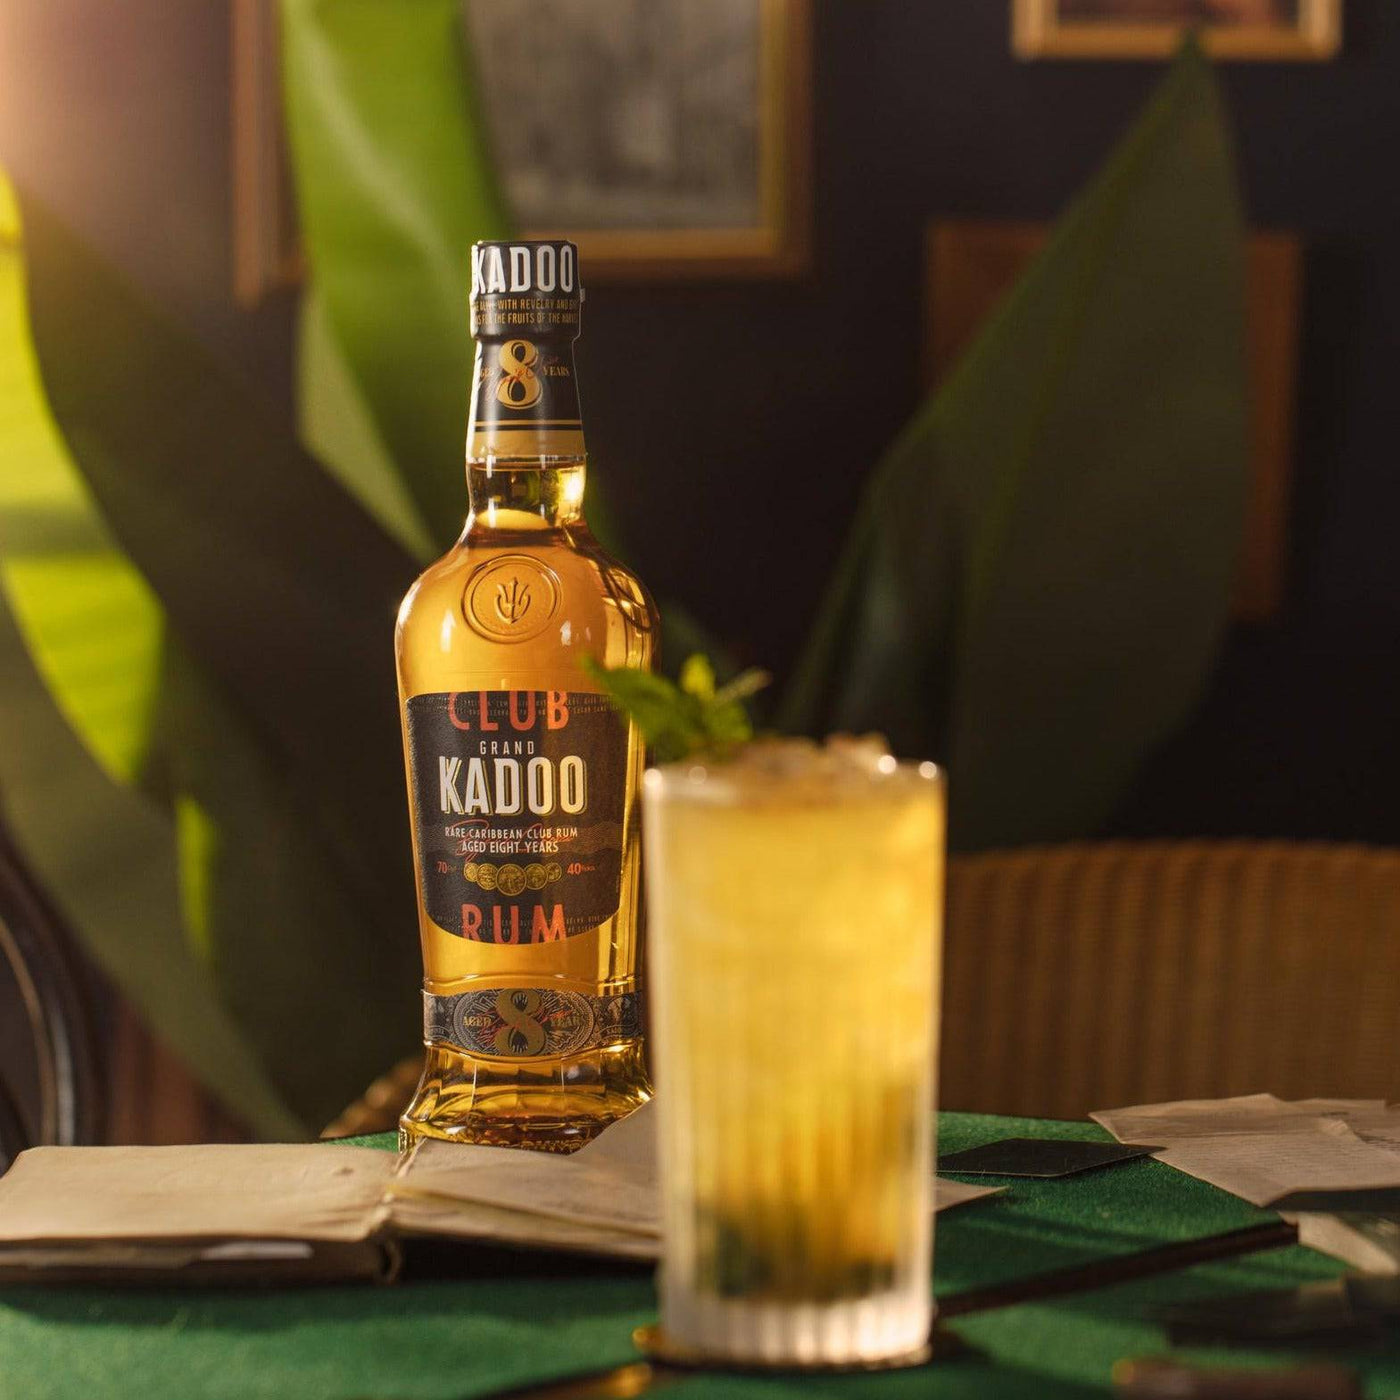 Grand Kadoo Club 8 Years Rum - Spiritly